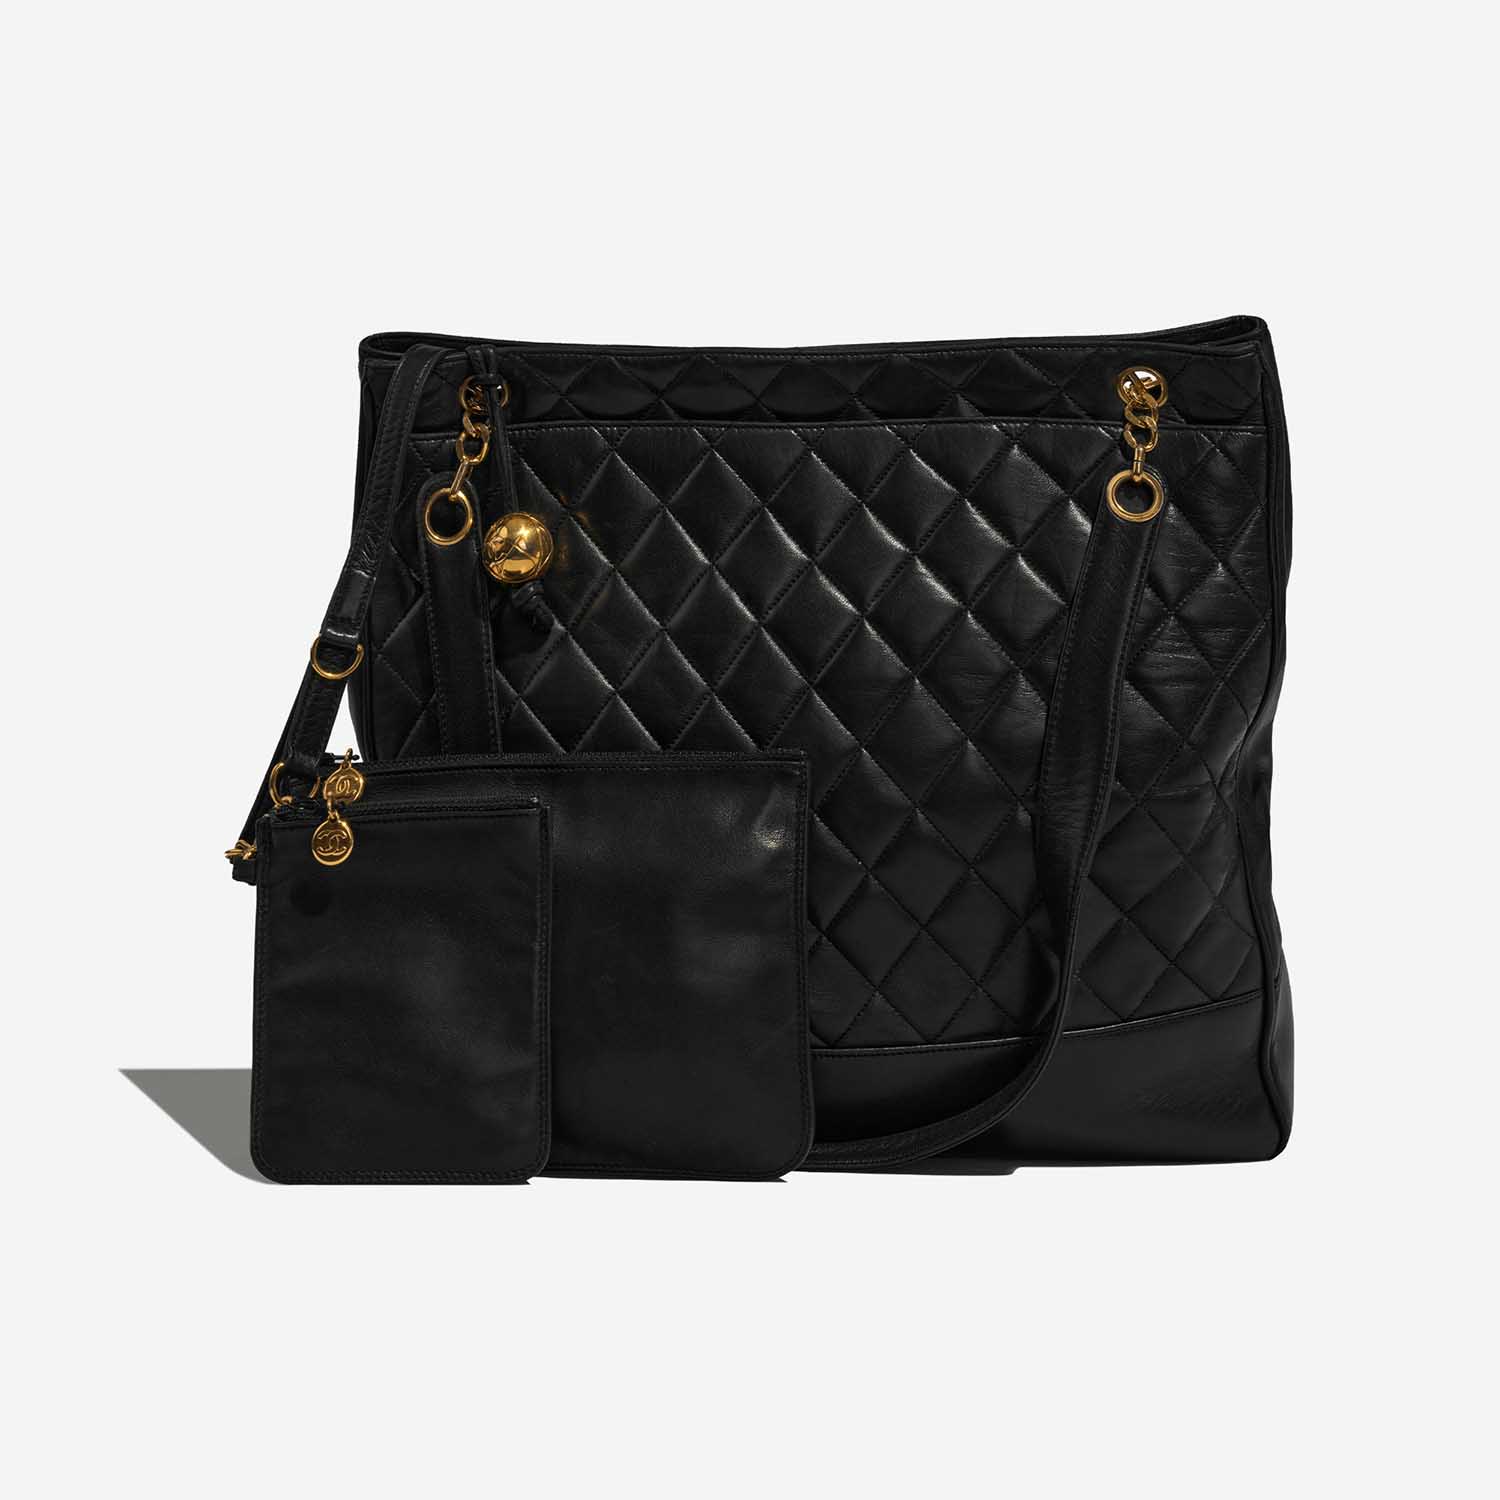 Chanel ShoppingTote Black Front | Verkaufen Sie Ihre Designertasche auf Saclab.com